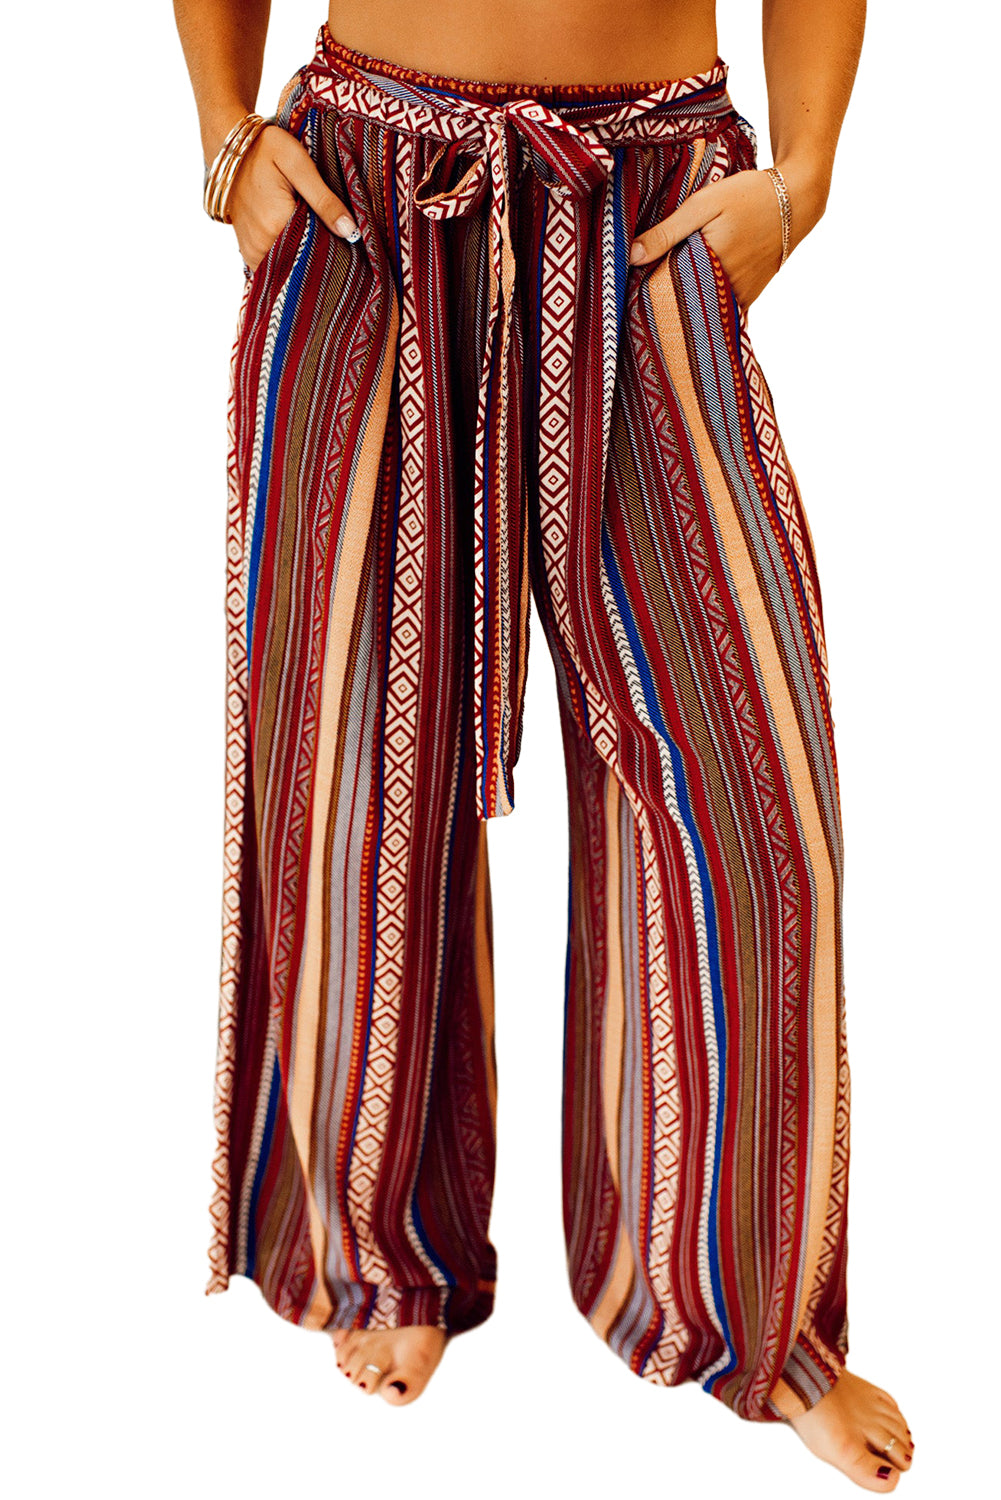 Rdeče široke hlače z etničnim črtastim vzorcem v boho stilu